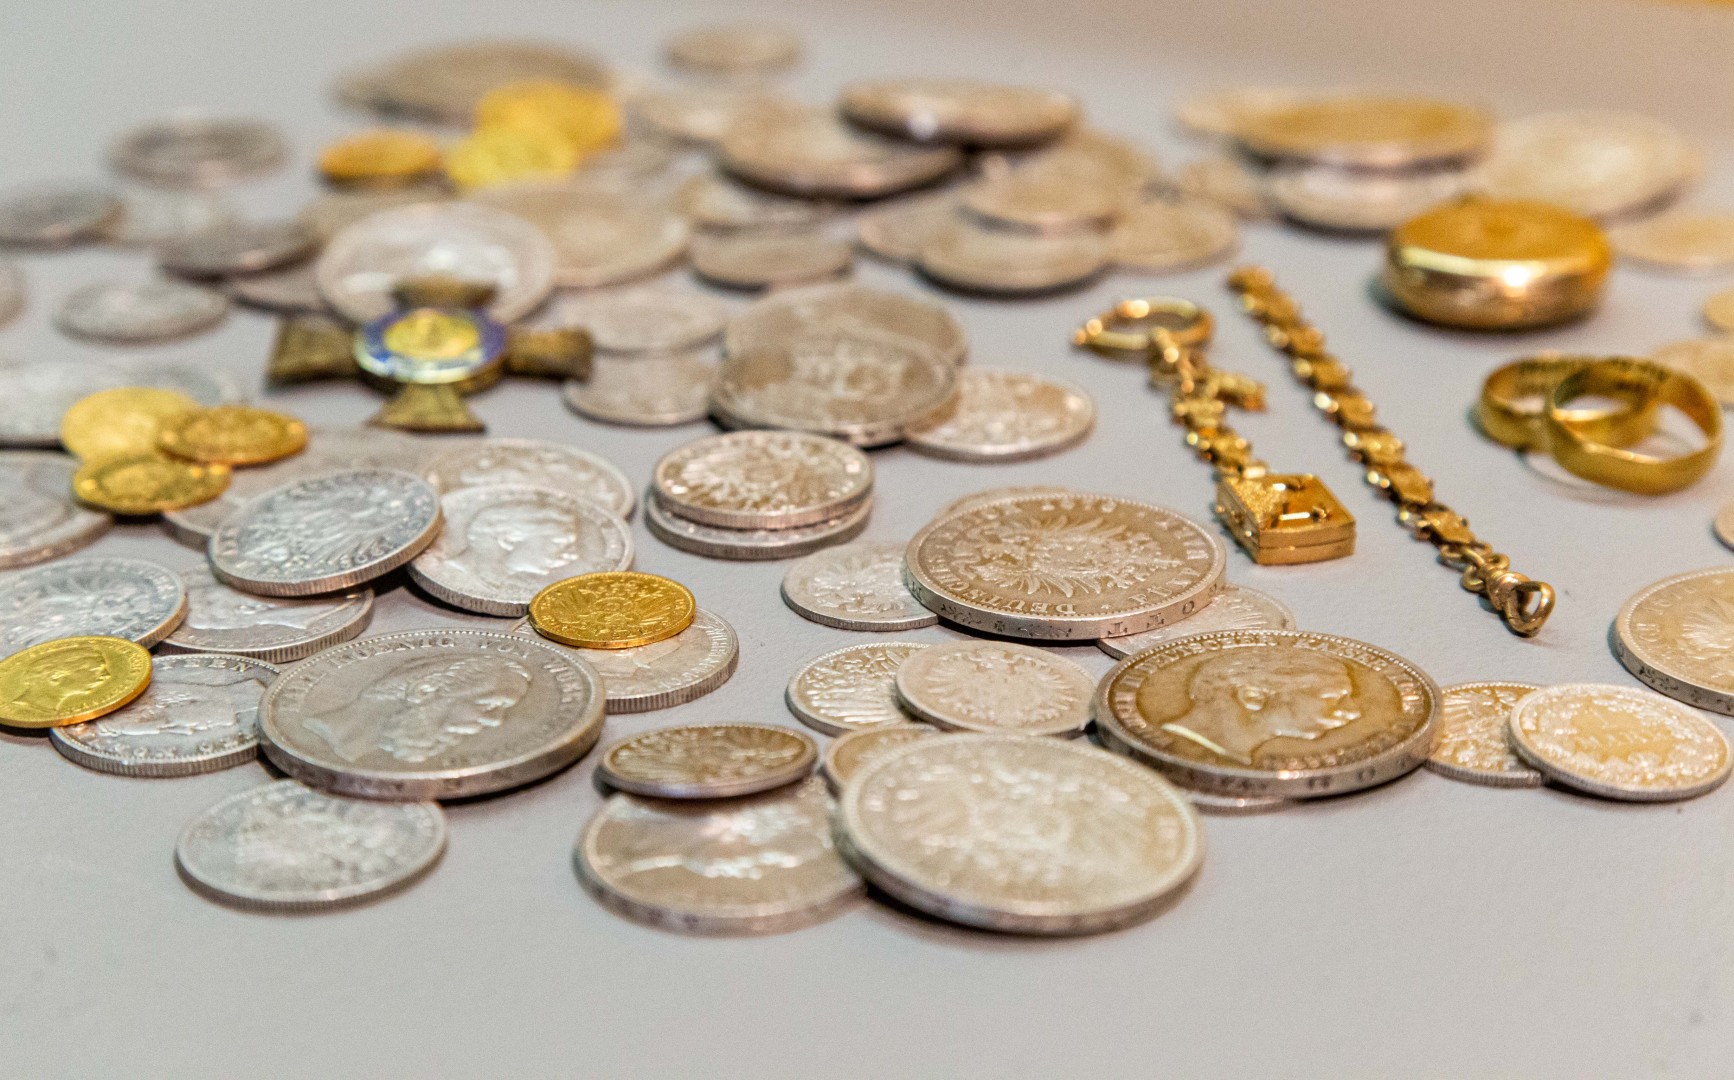 Aukštvilkių lobis. Jį sudaro – vokiškos sidabrinės ir auksinės monetos, ordinas, du auksiniai vestuviniai žiedai, laikrodis | Laima Penek, Lietuvos nacionalinio muziejaus nuotr.